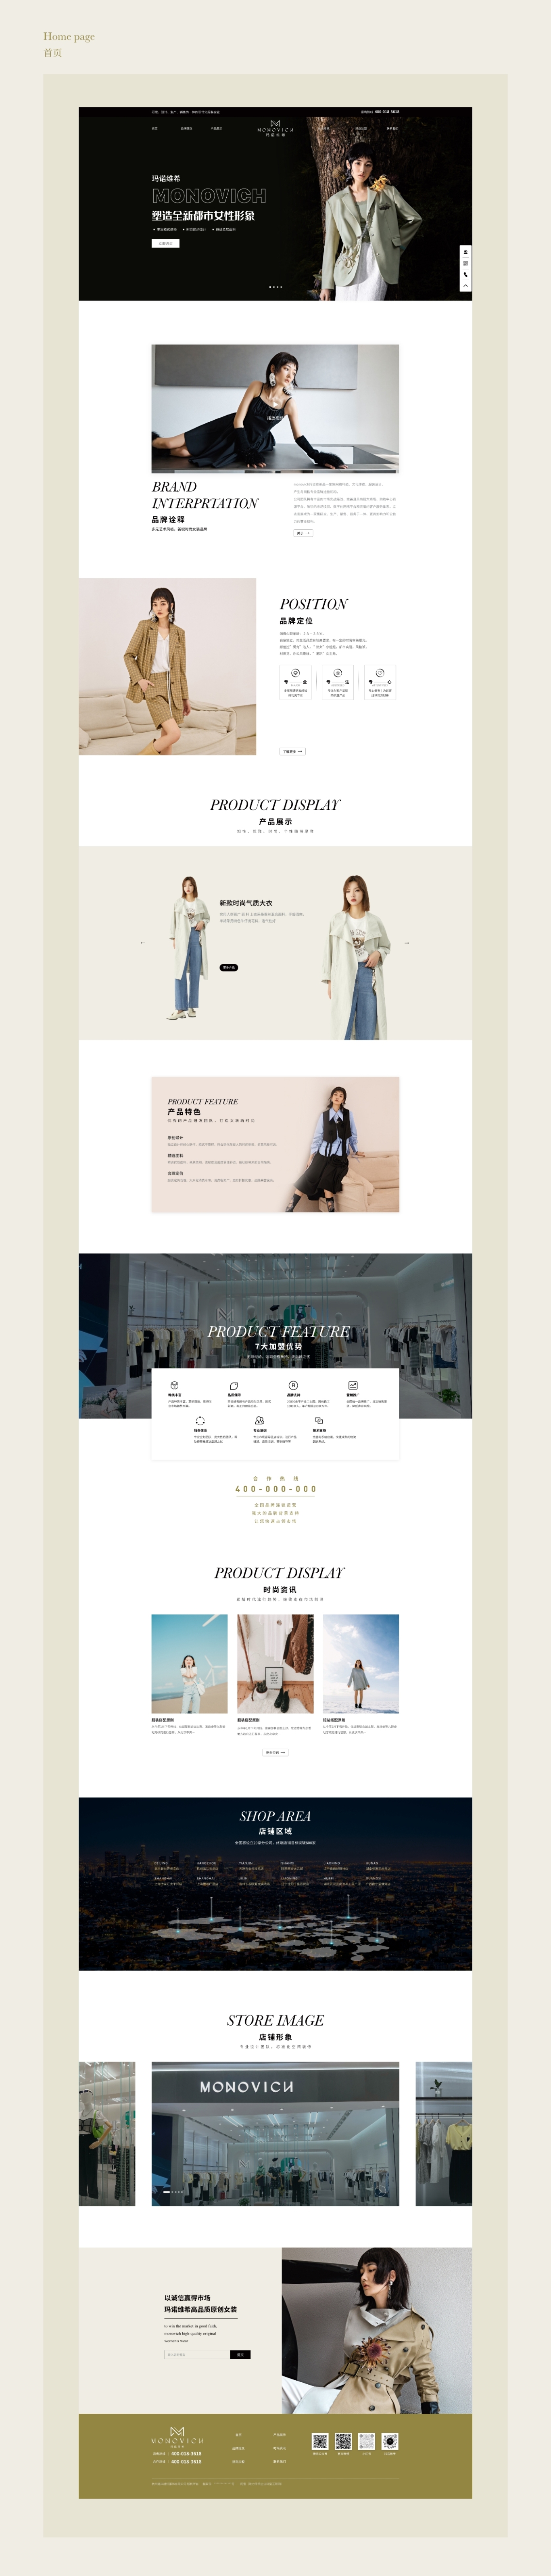 UI/UIX 瑪諾維希女裝品牌 網頁設計圖1